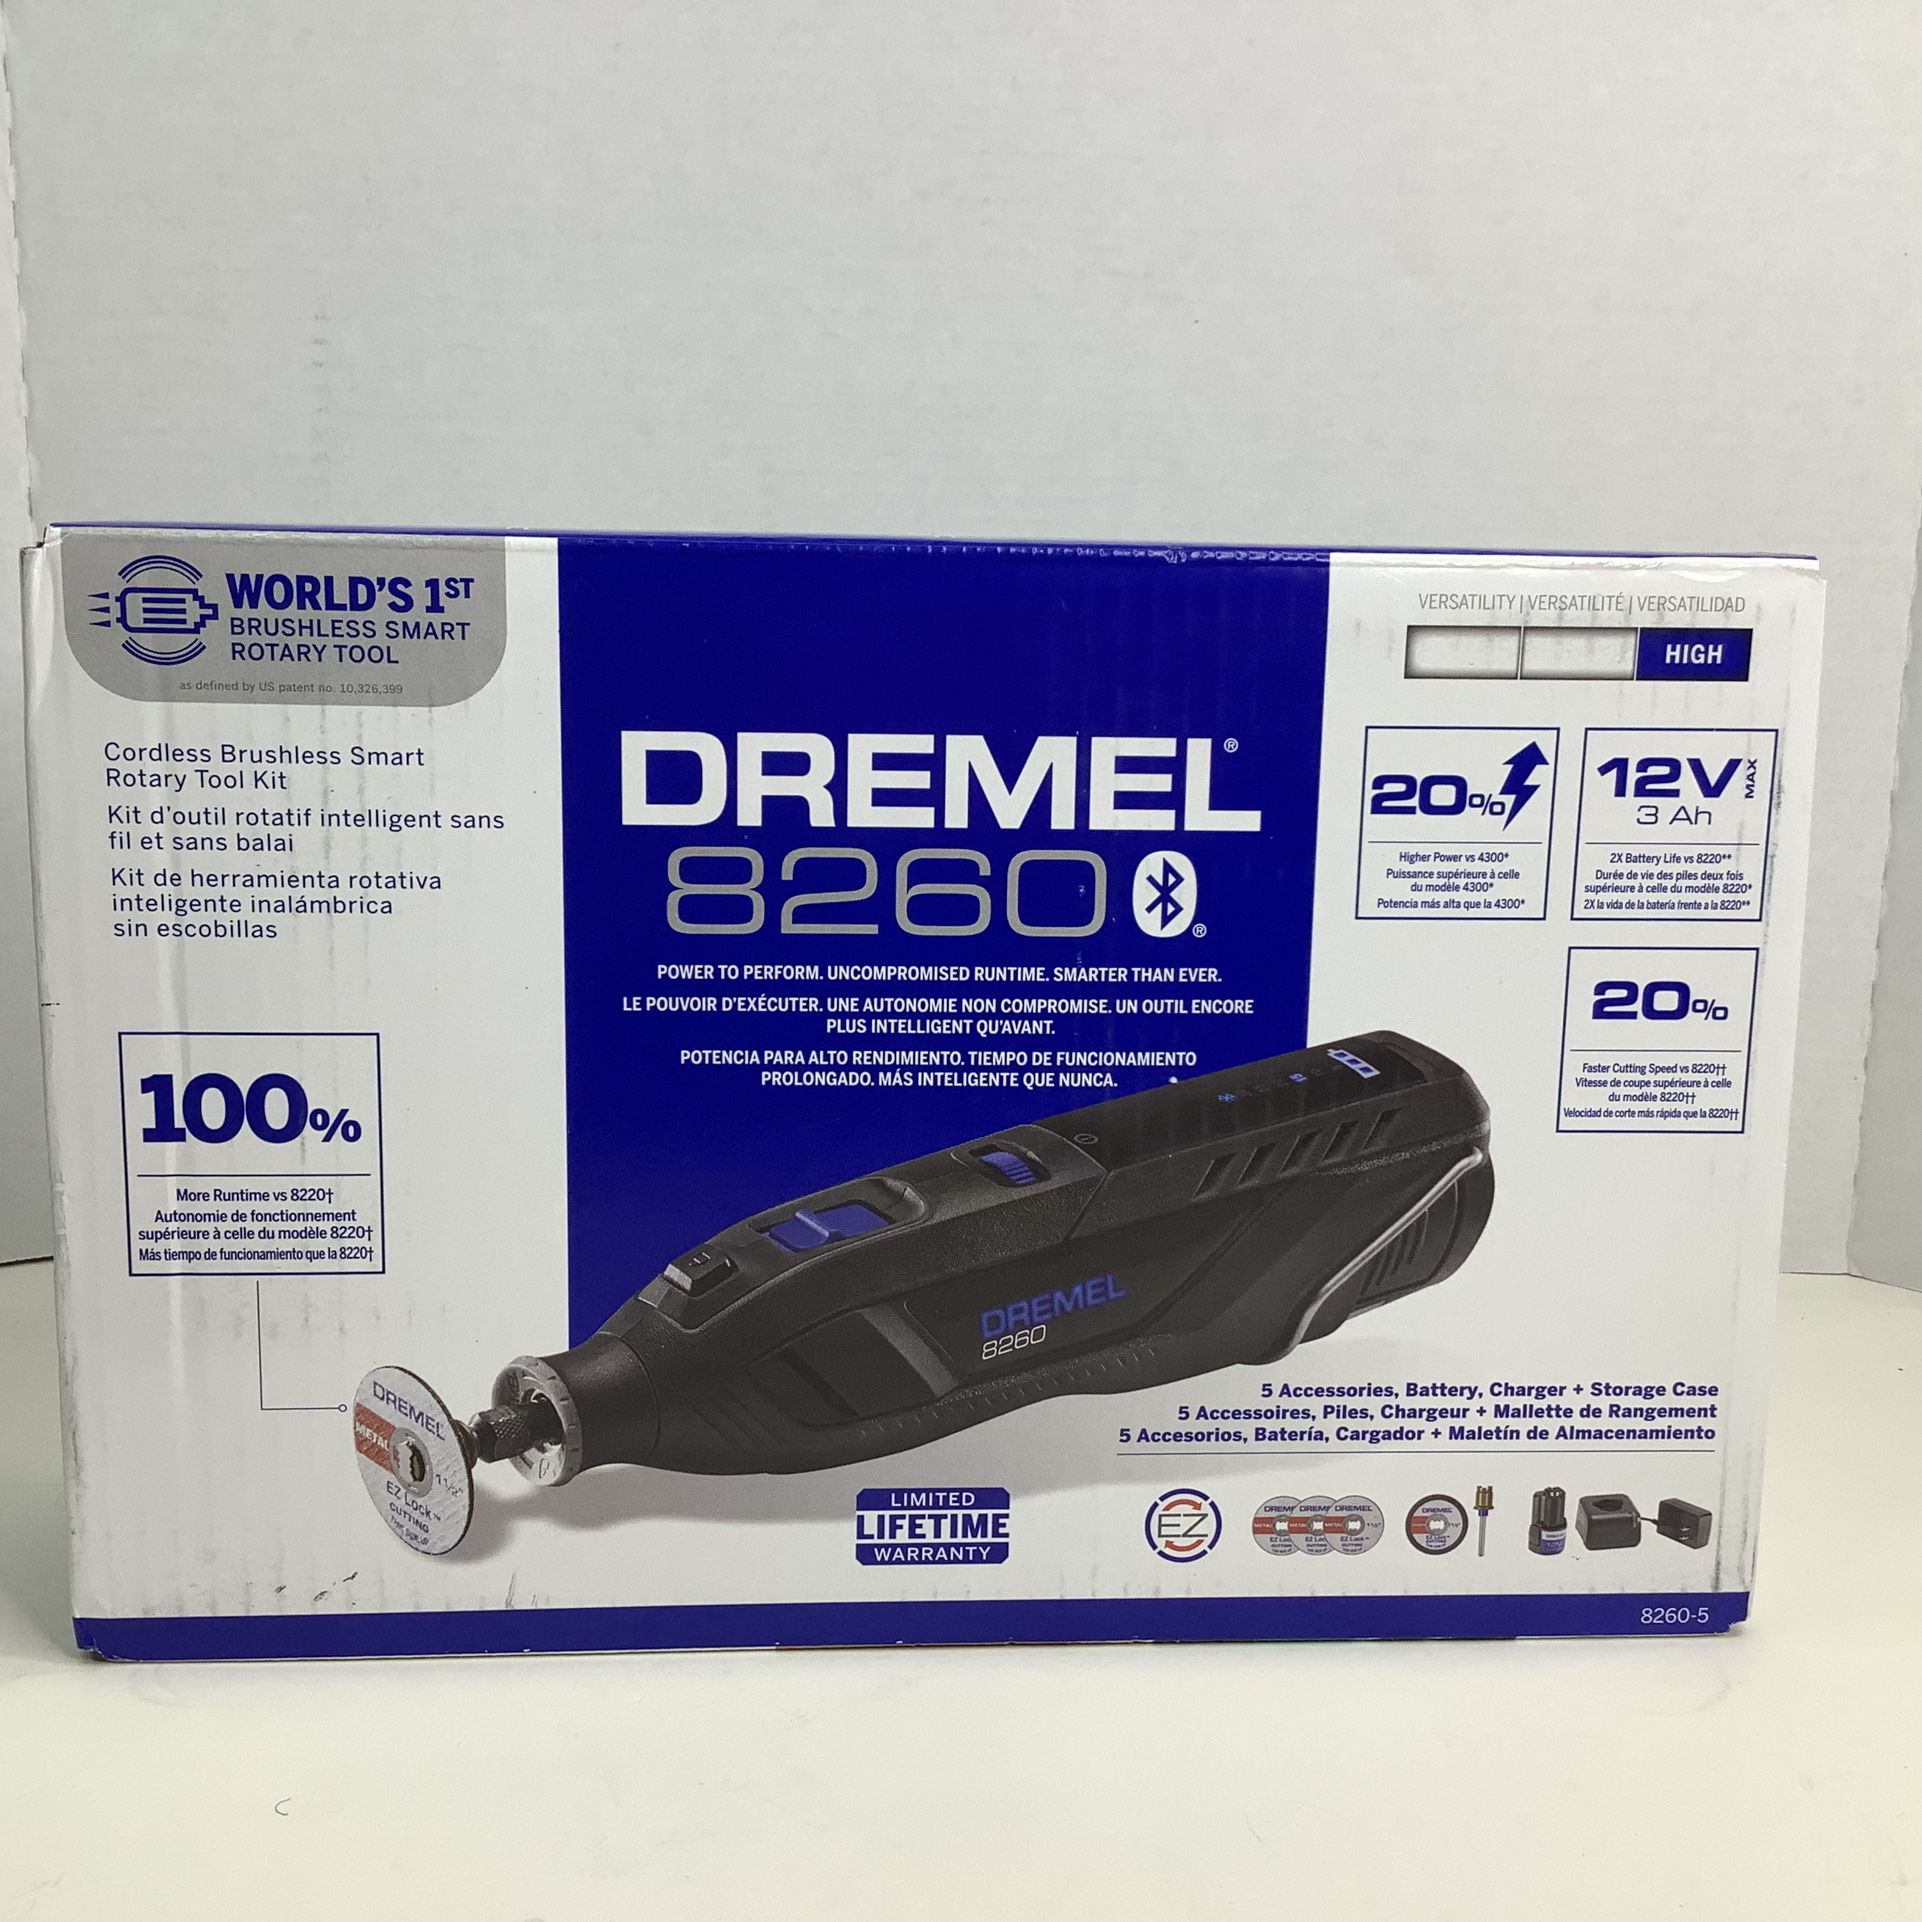 Dremel 8260 Cordless Brushless Smart Rotary Tool Kit *Brand New* 